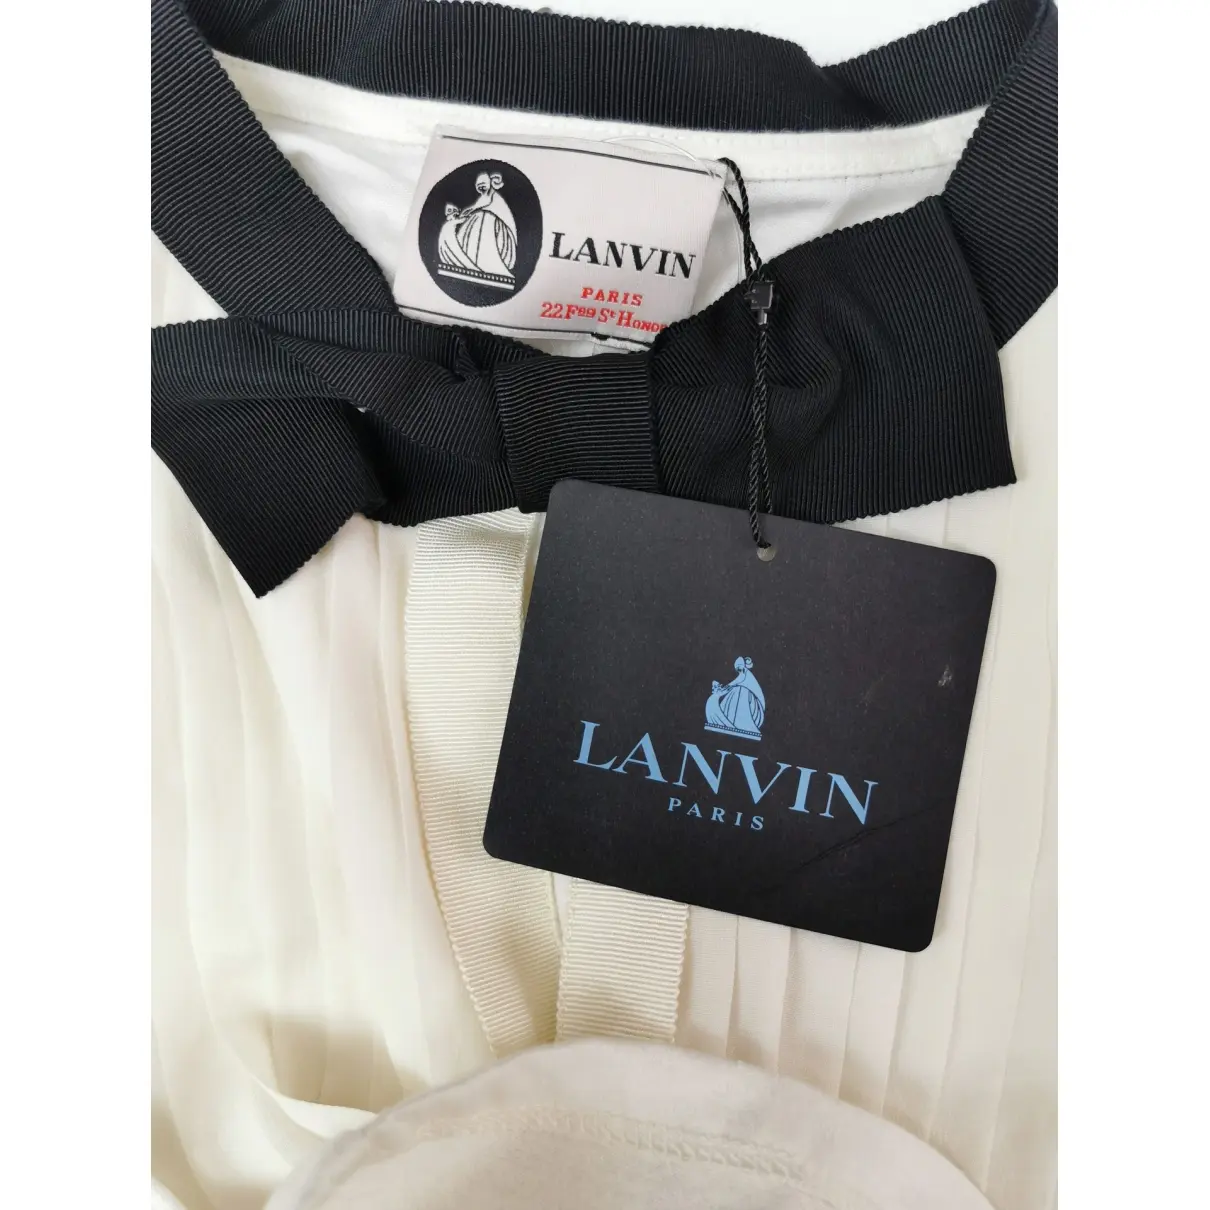 Buy Lanvin Blouse online